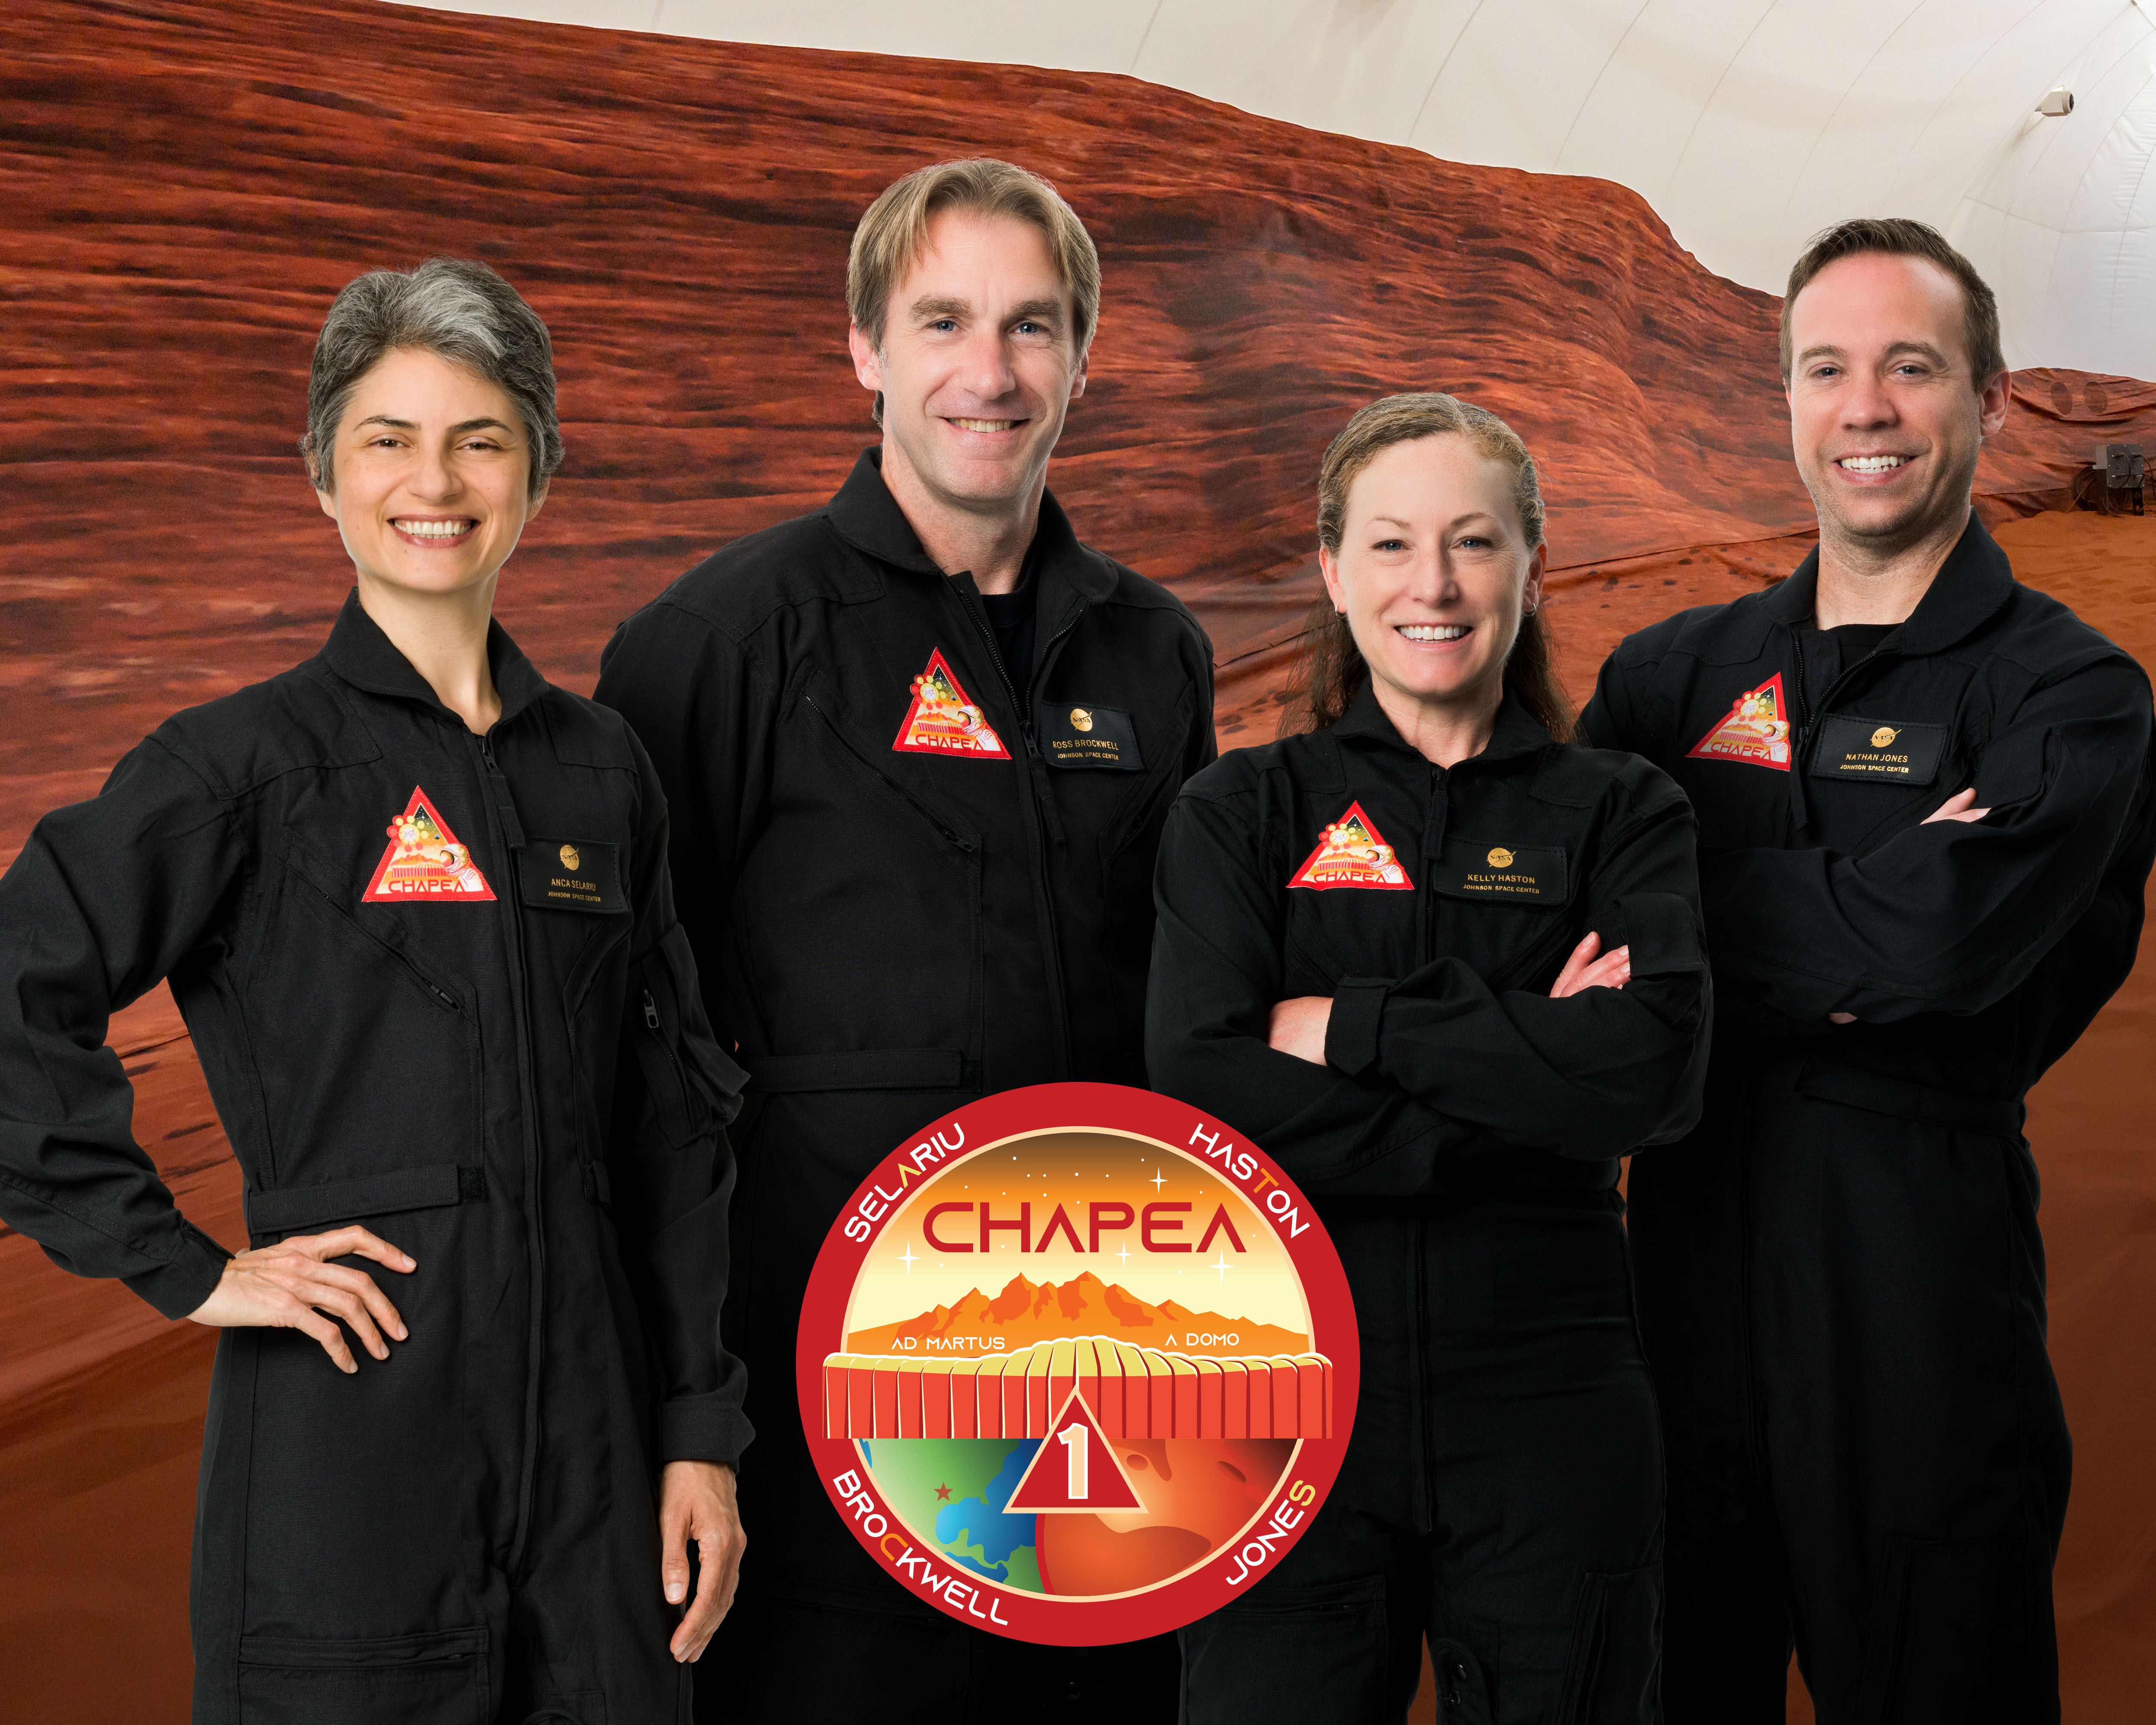 I quattro membri dell’equipaggio: da sinistra, Anca Selariu, Ross Brockwell, Kelly Haston e Nathan Jones